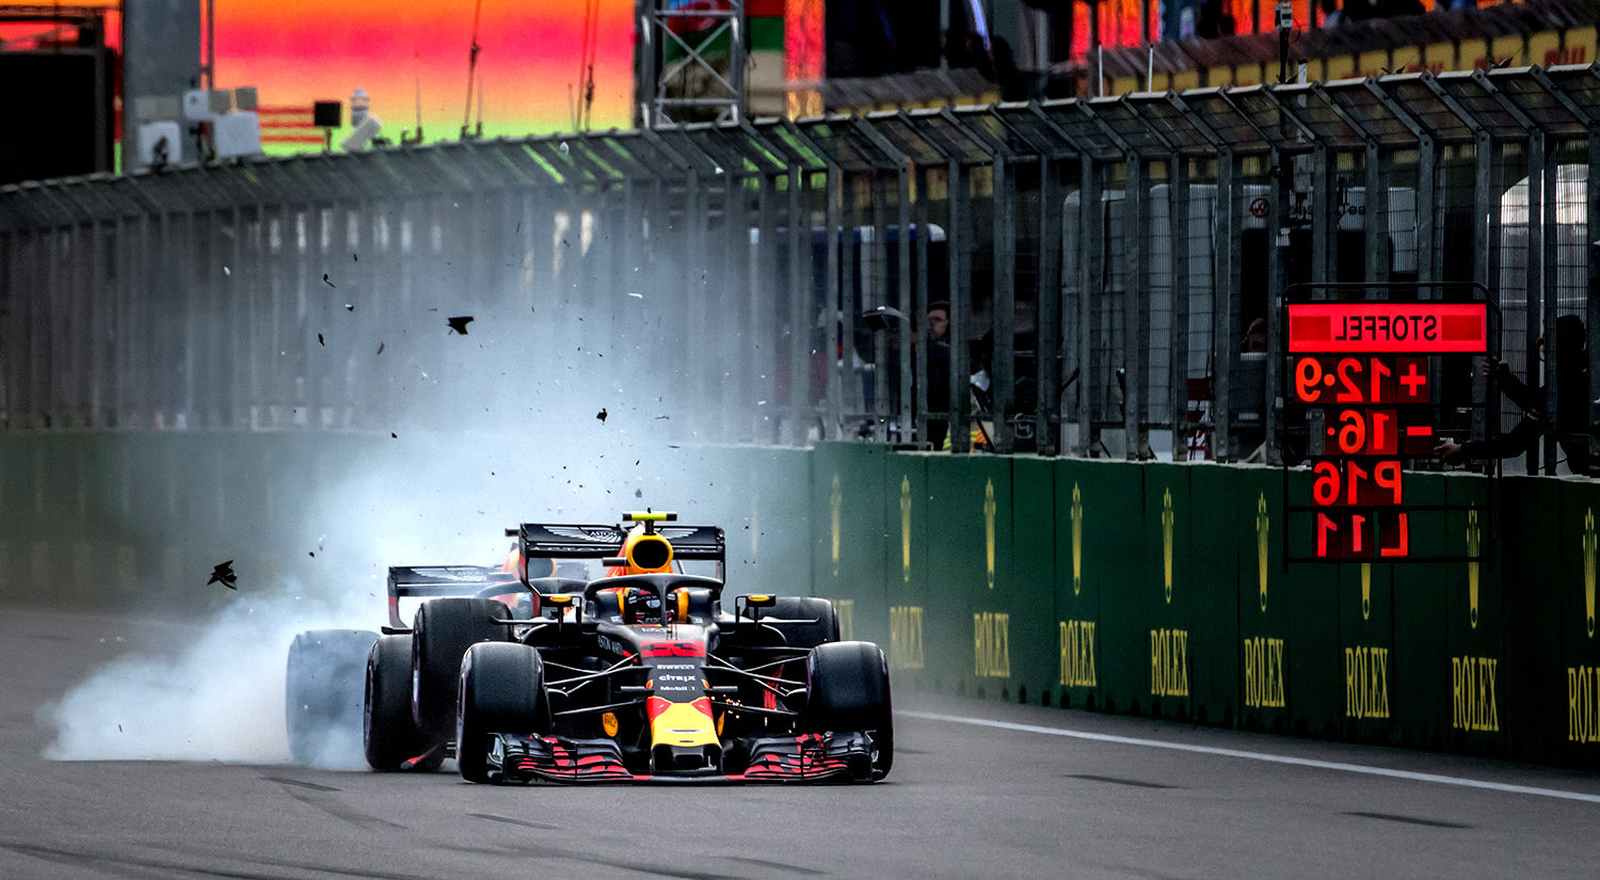 2018 foi um ano marcante para companheiros de equipe. A relação entre Max Verstappen e Daniel Ricciardo azedou de vez após acidente no Azerbaijão